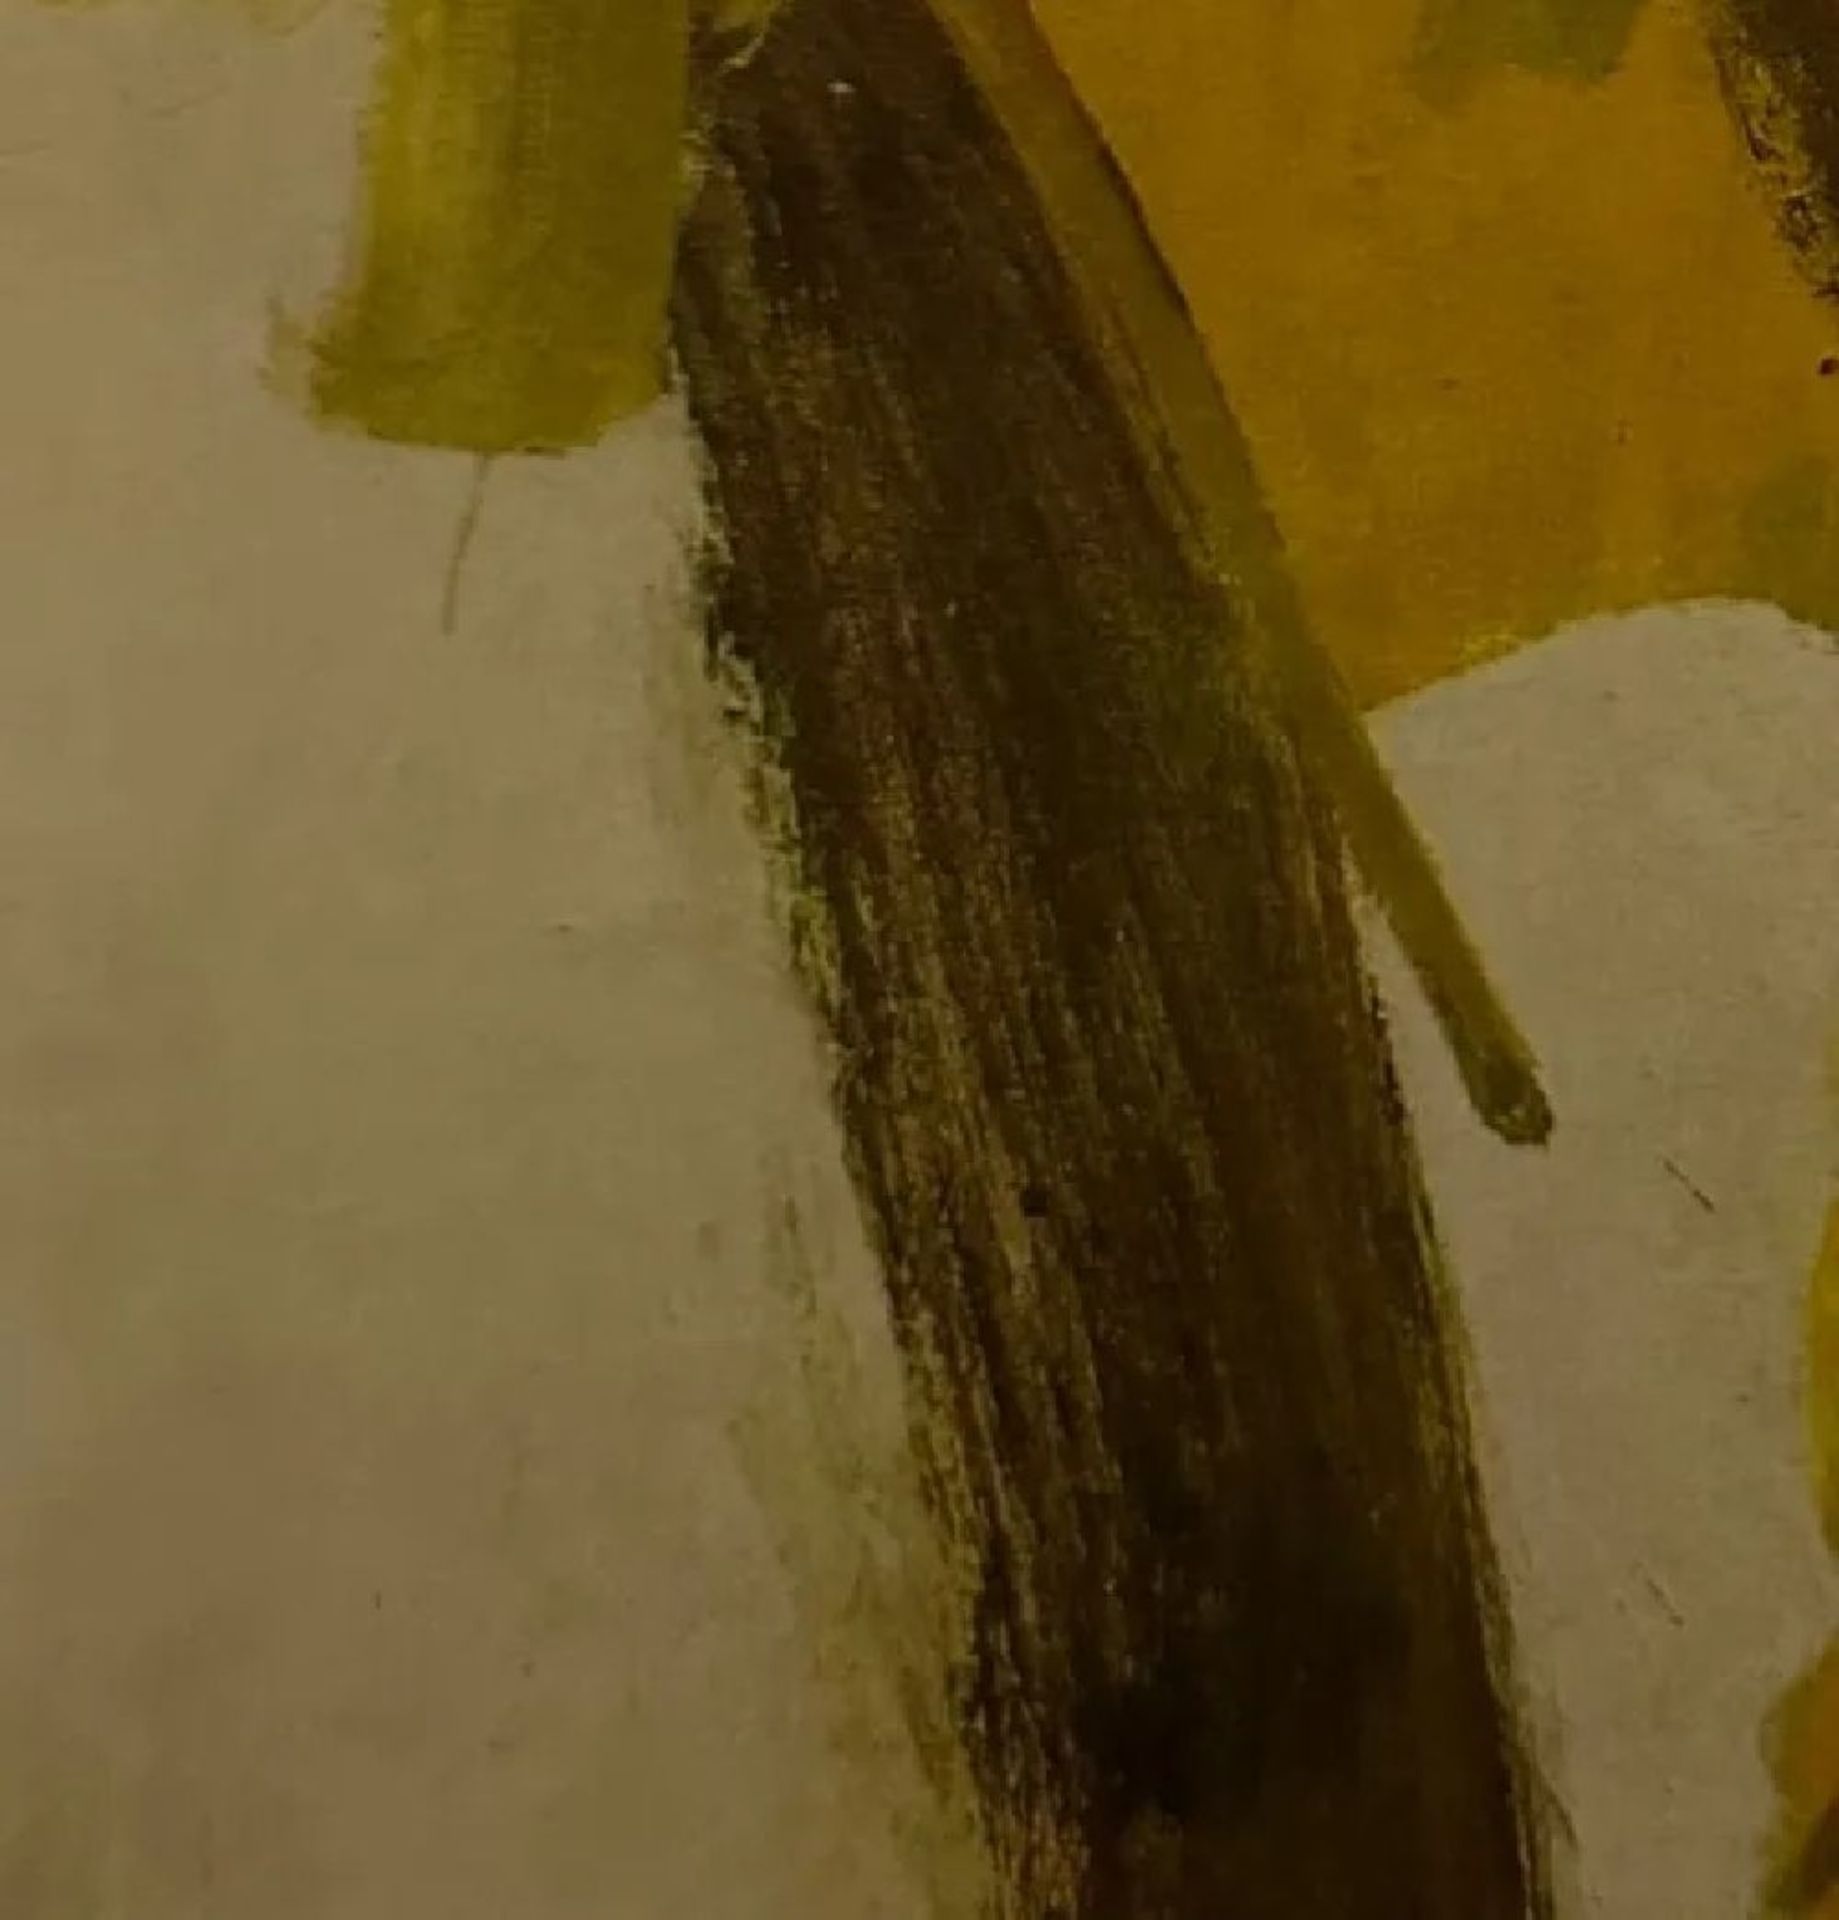 Willem de Kooning "Untitled" Print. - Image 3 of 6